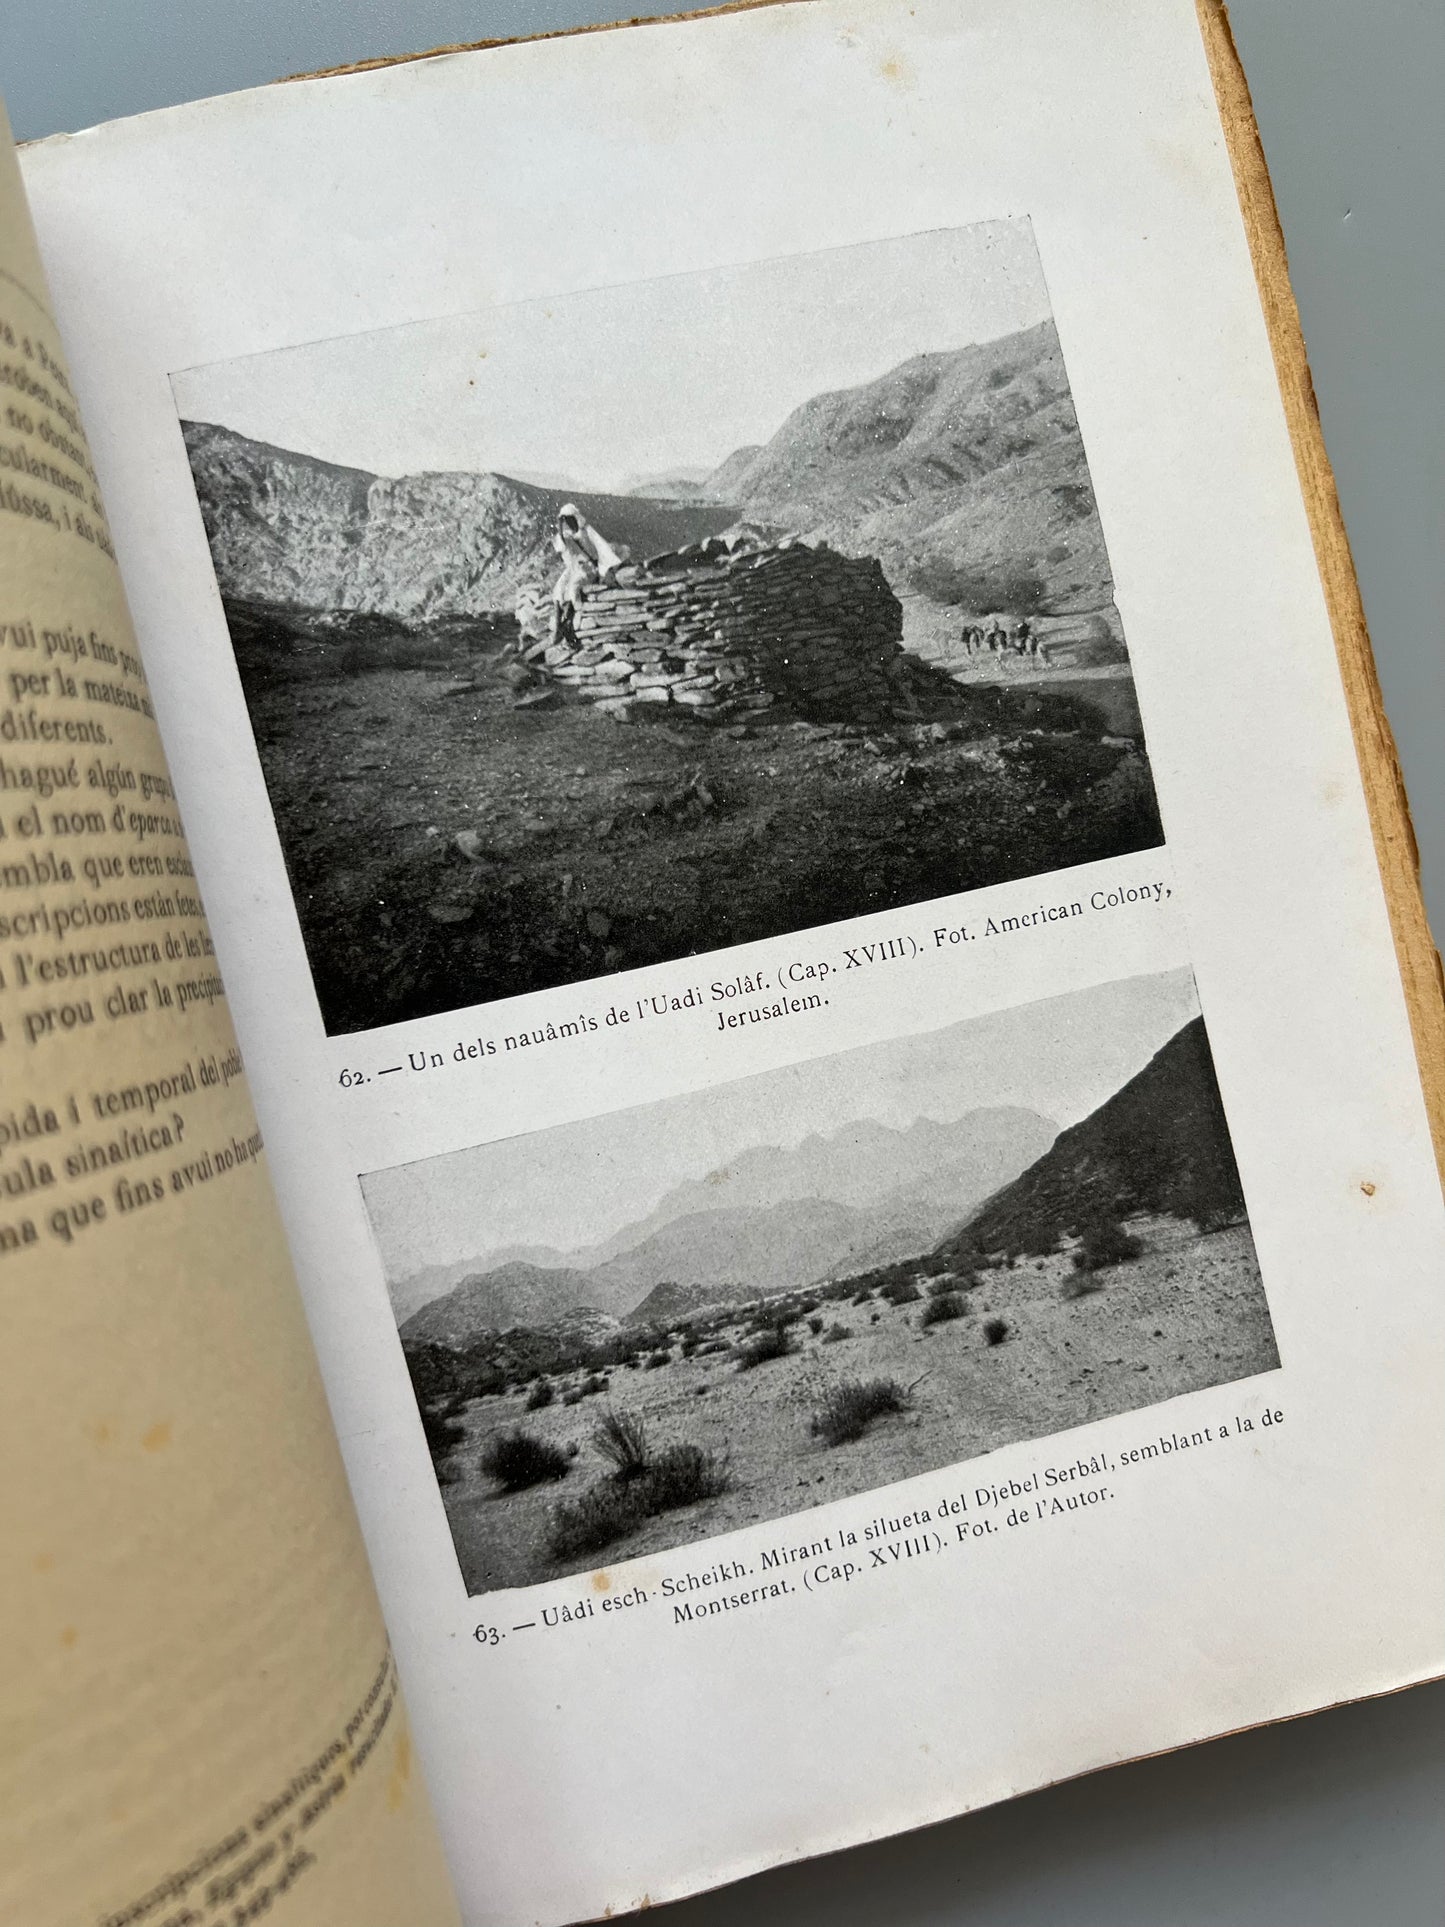 El Sinaí, viatge per l'Arabia petrea, cercant les petjades d'Israel, B. Ubach - Oliva impressor, 1913